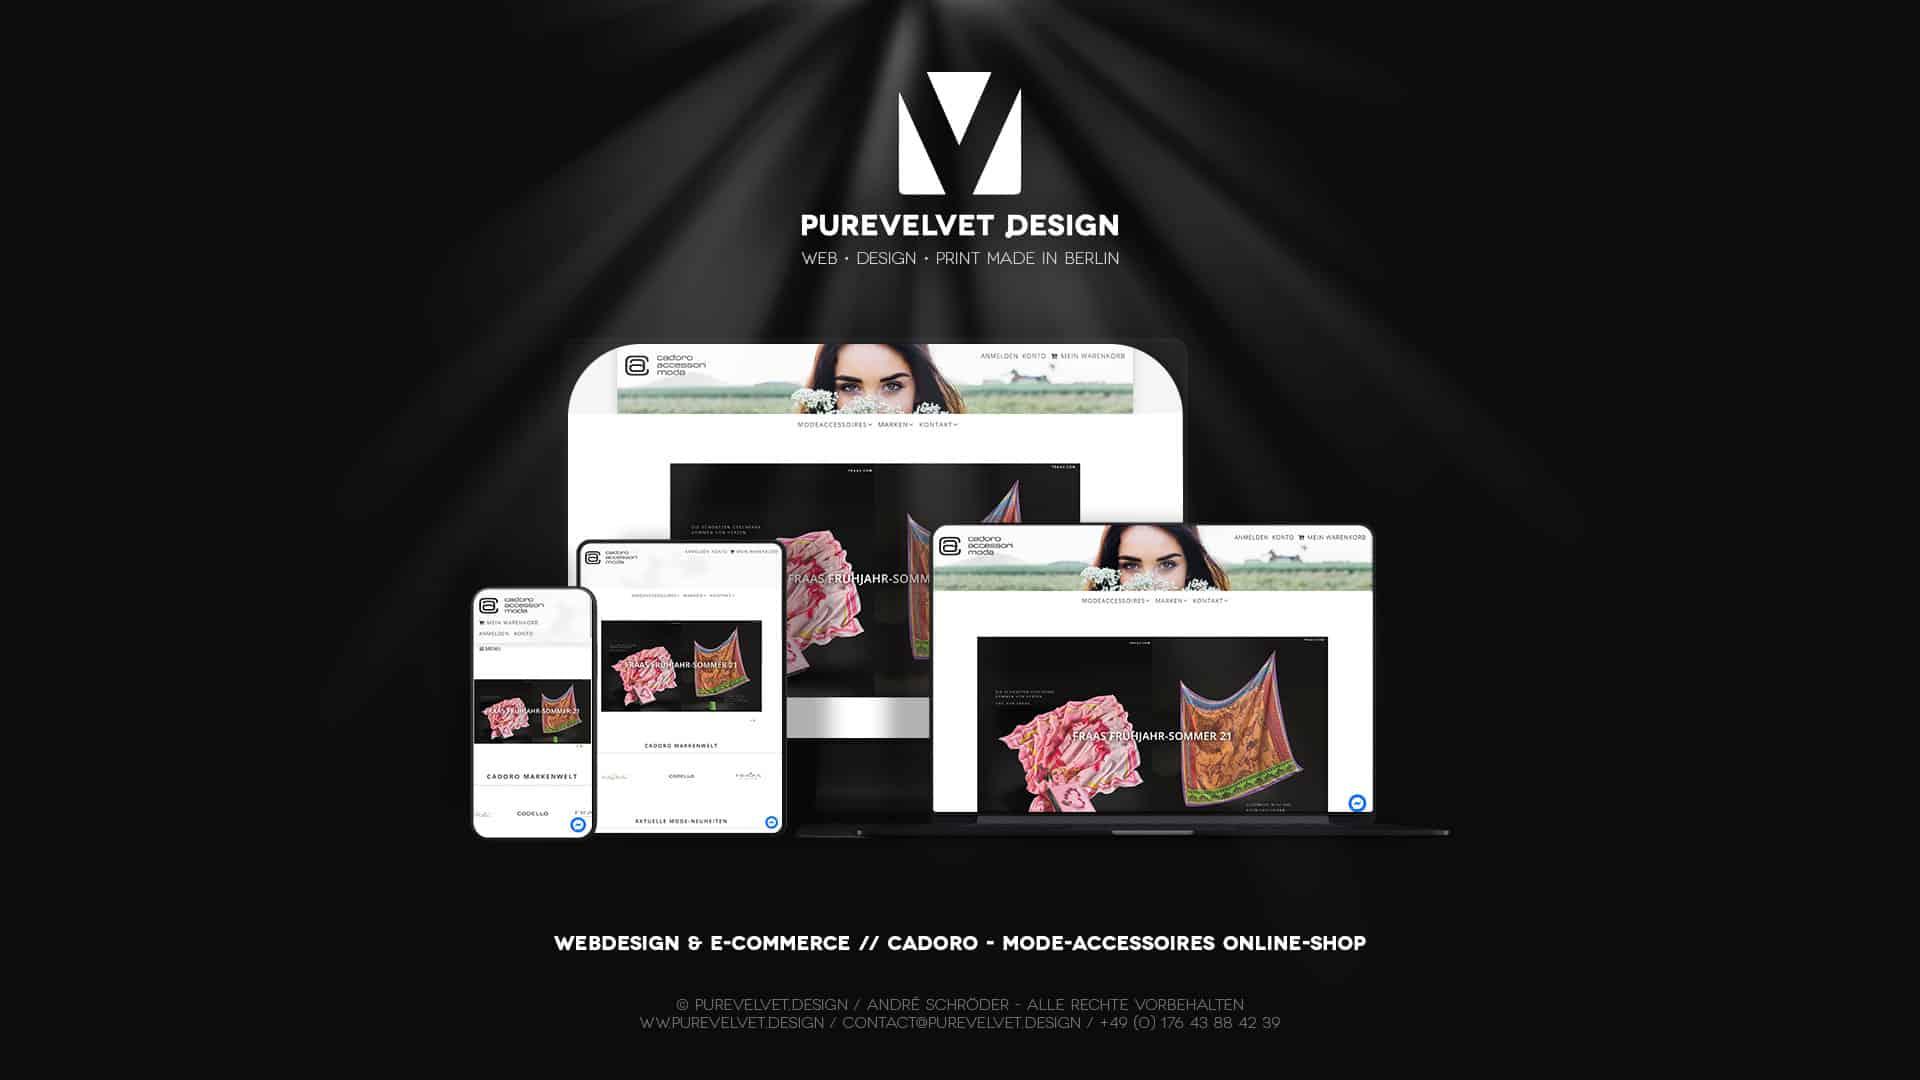 Webdesign Referenz - CADORO Modeaccessoires & Damenbekleidung Online Shop & Geschäft Wien